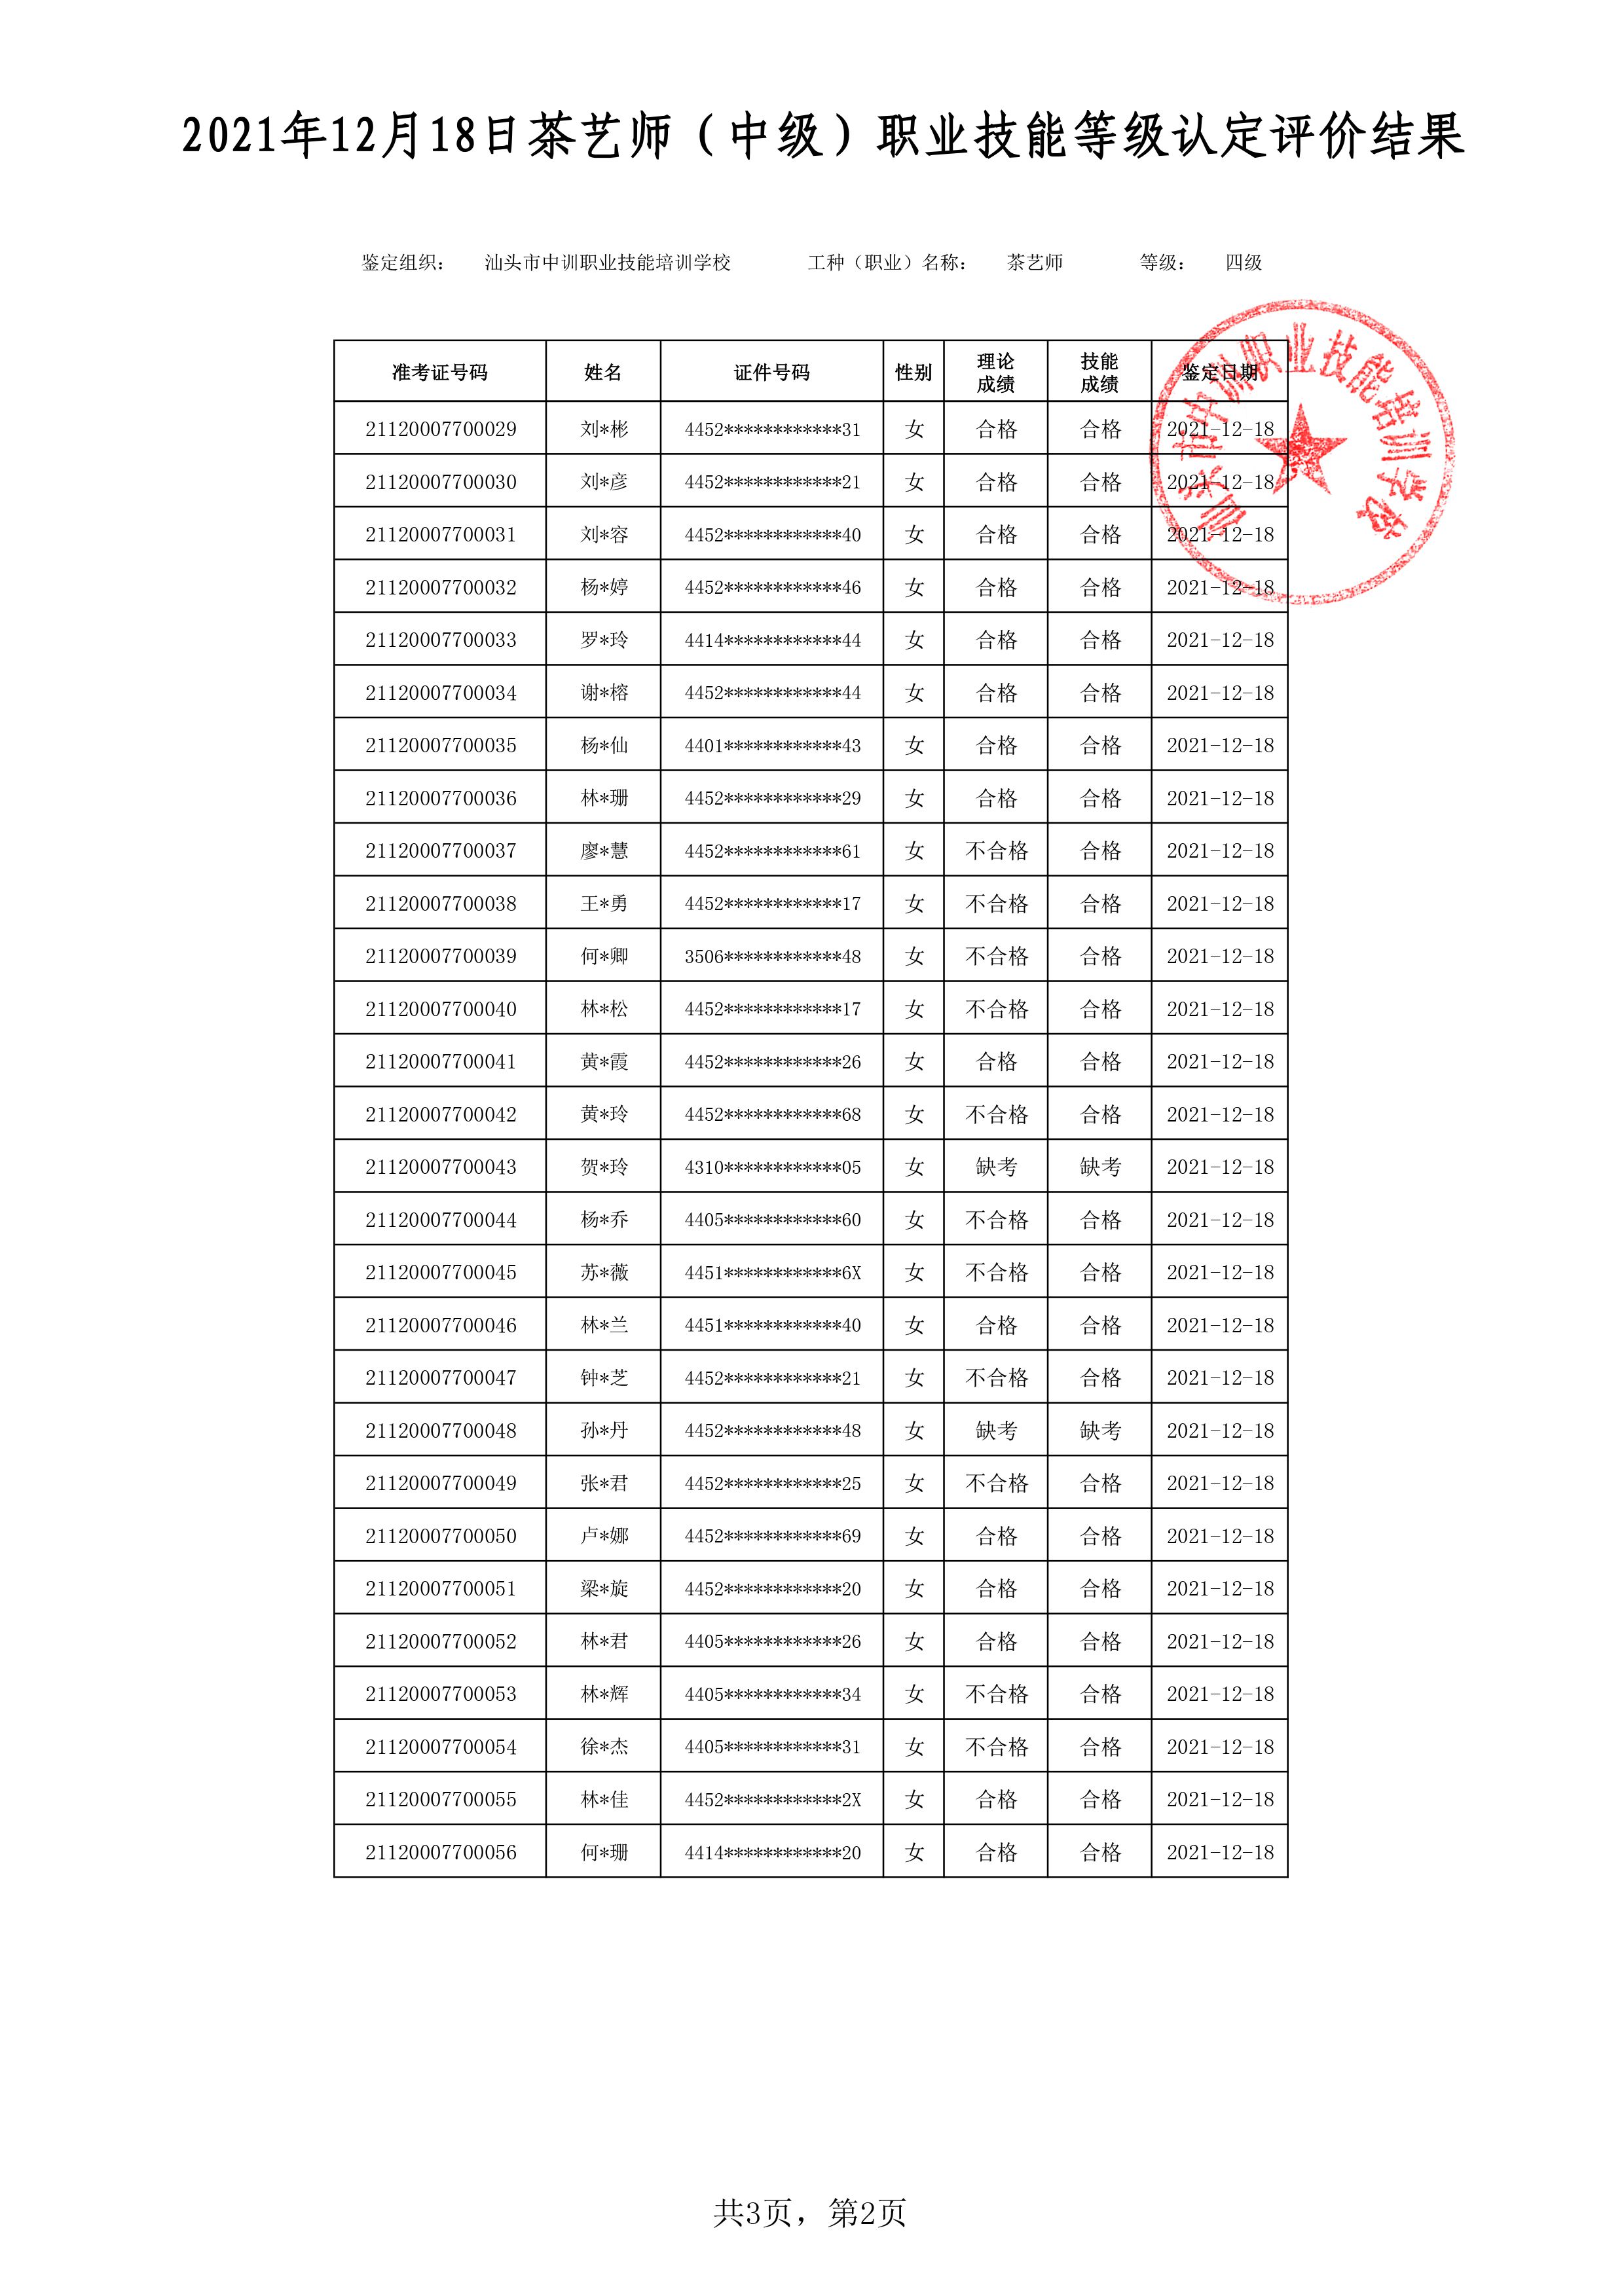 21-12-18四级茶艺师考试鉴定名册表-2 副本.jpg